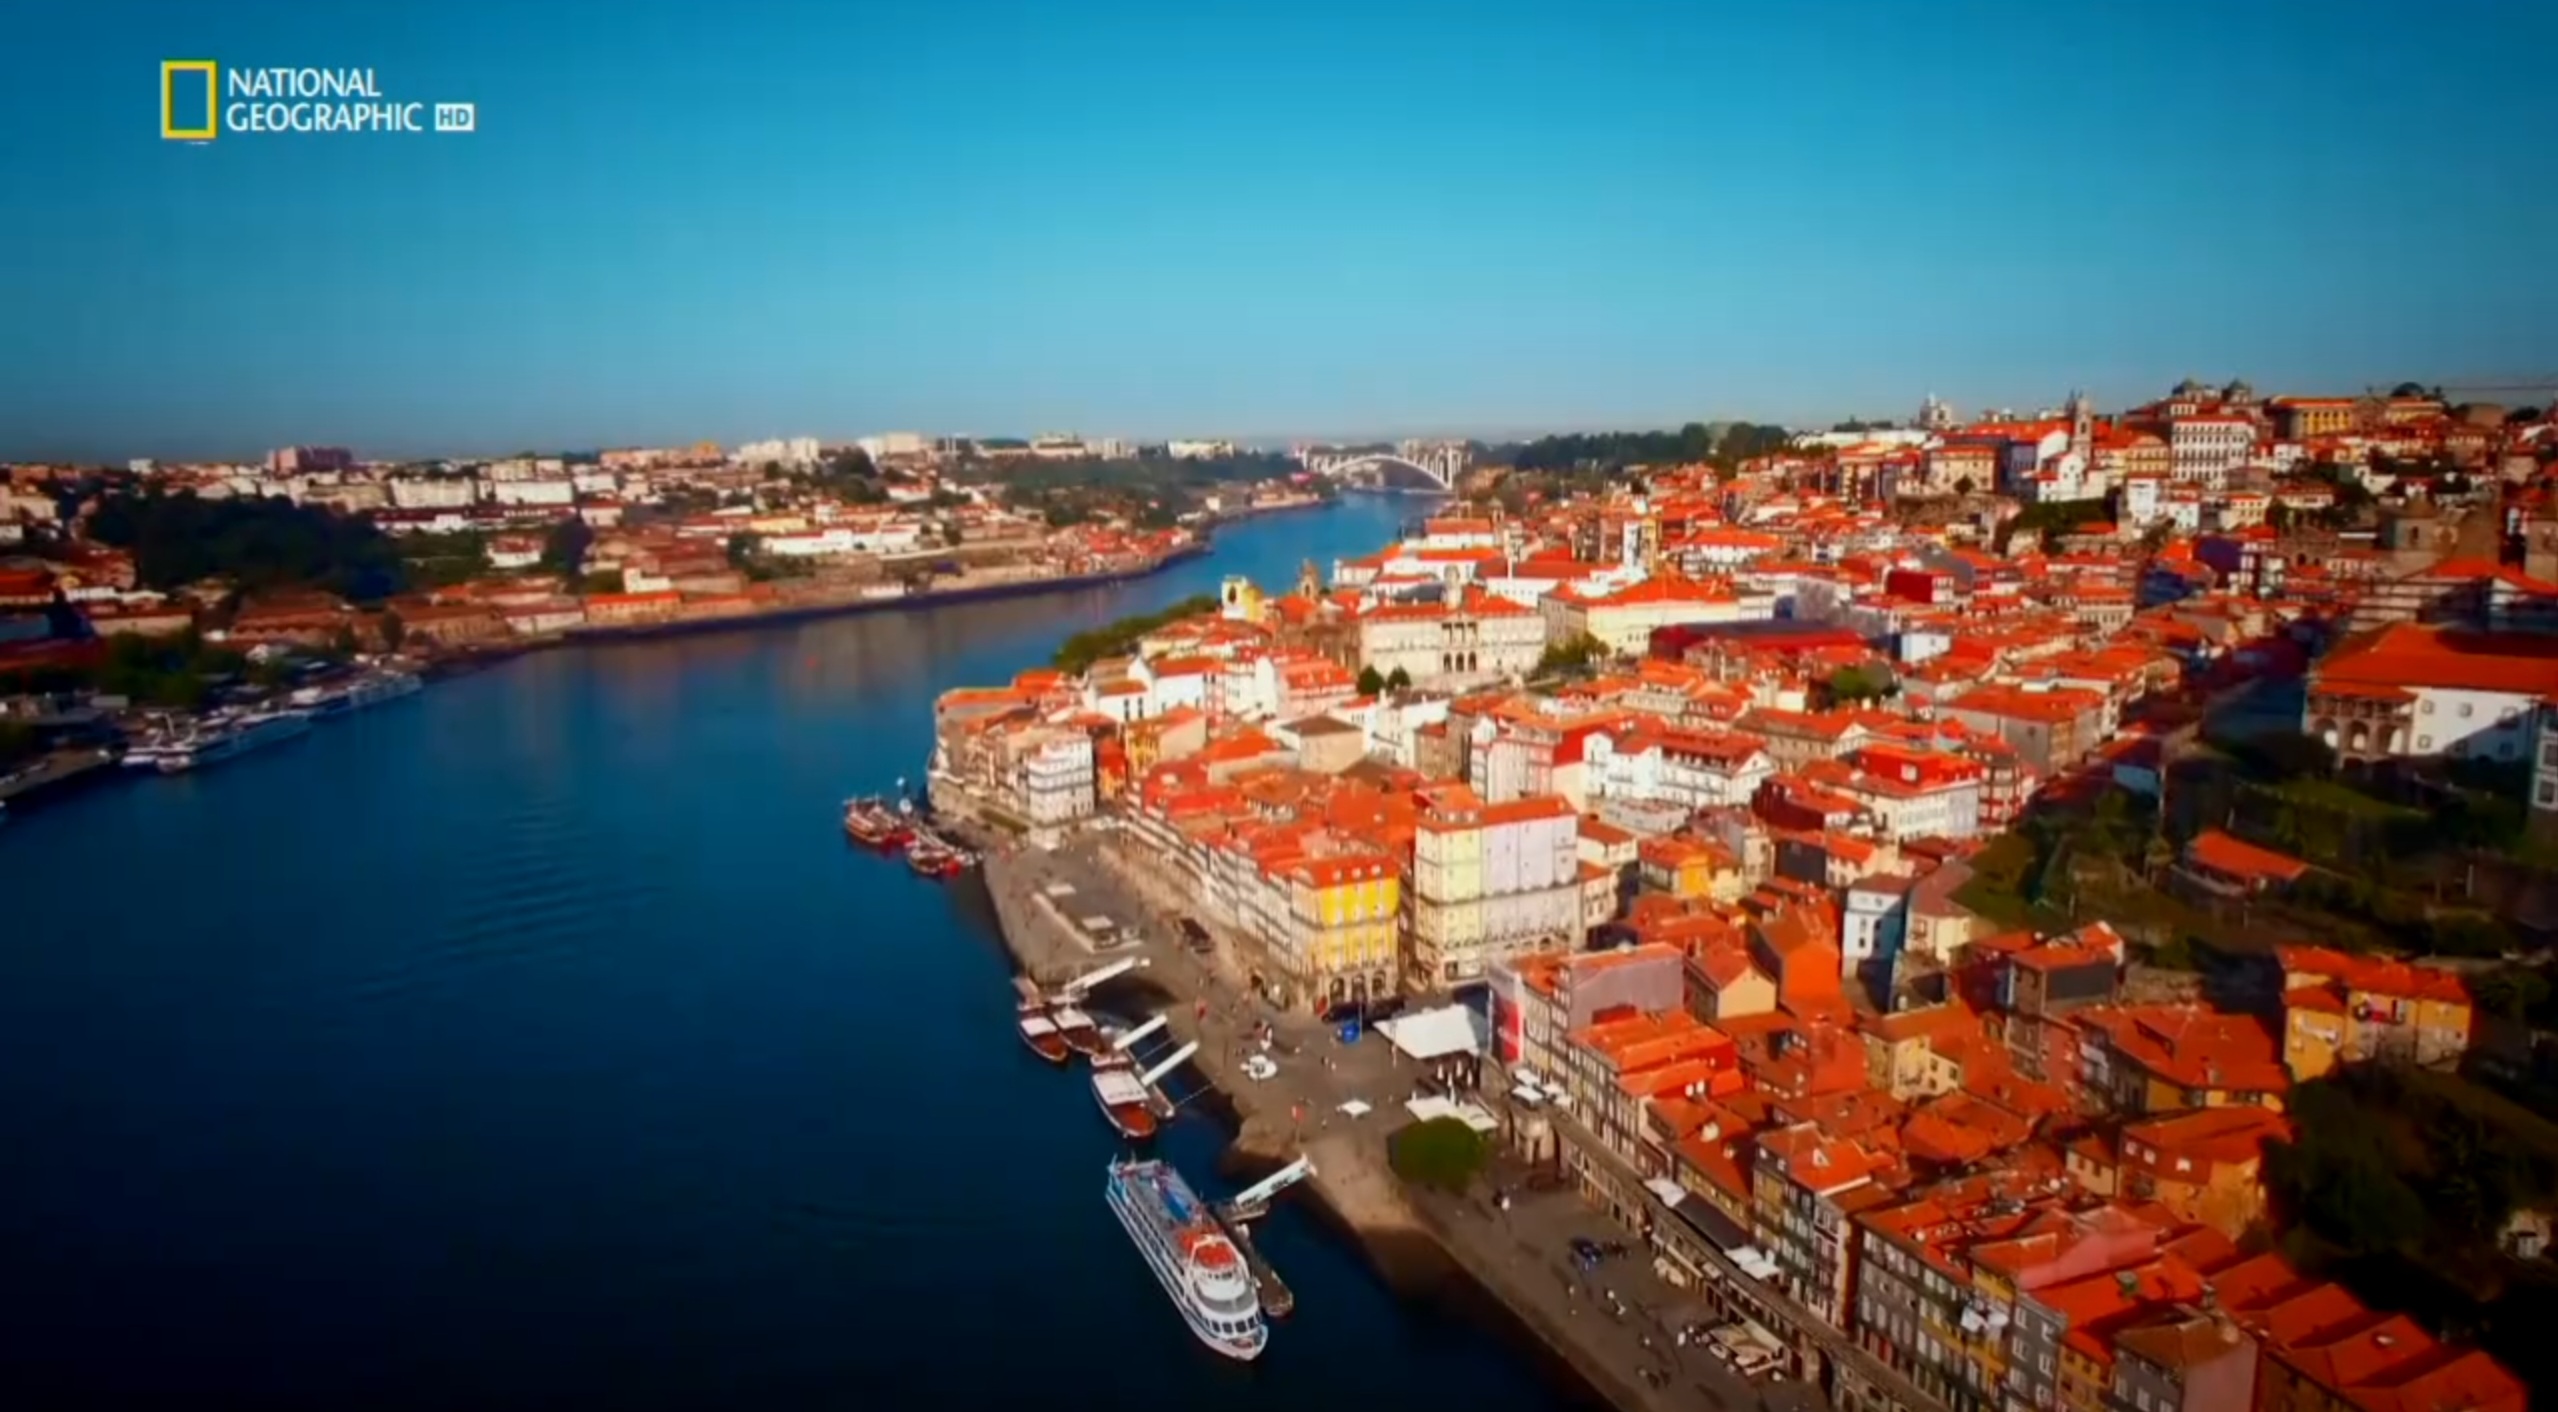 Europa von oben: Portugal | Season 3 | Episode 3